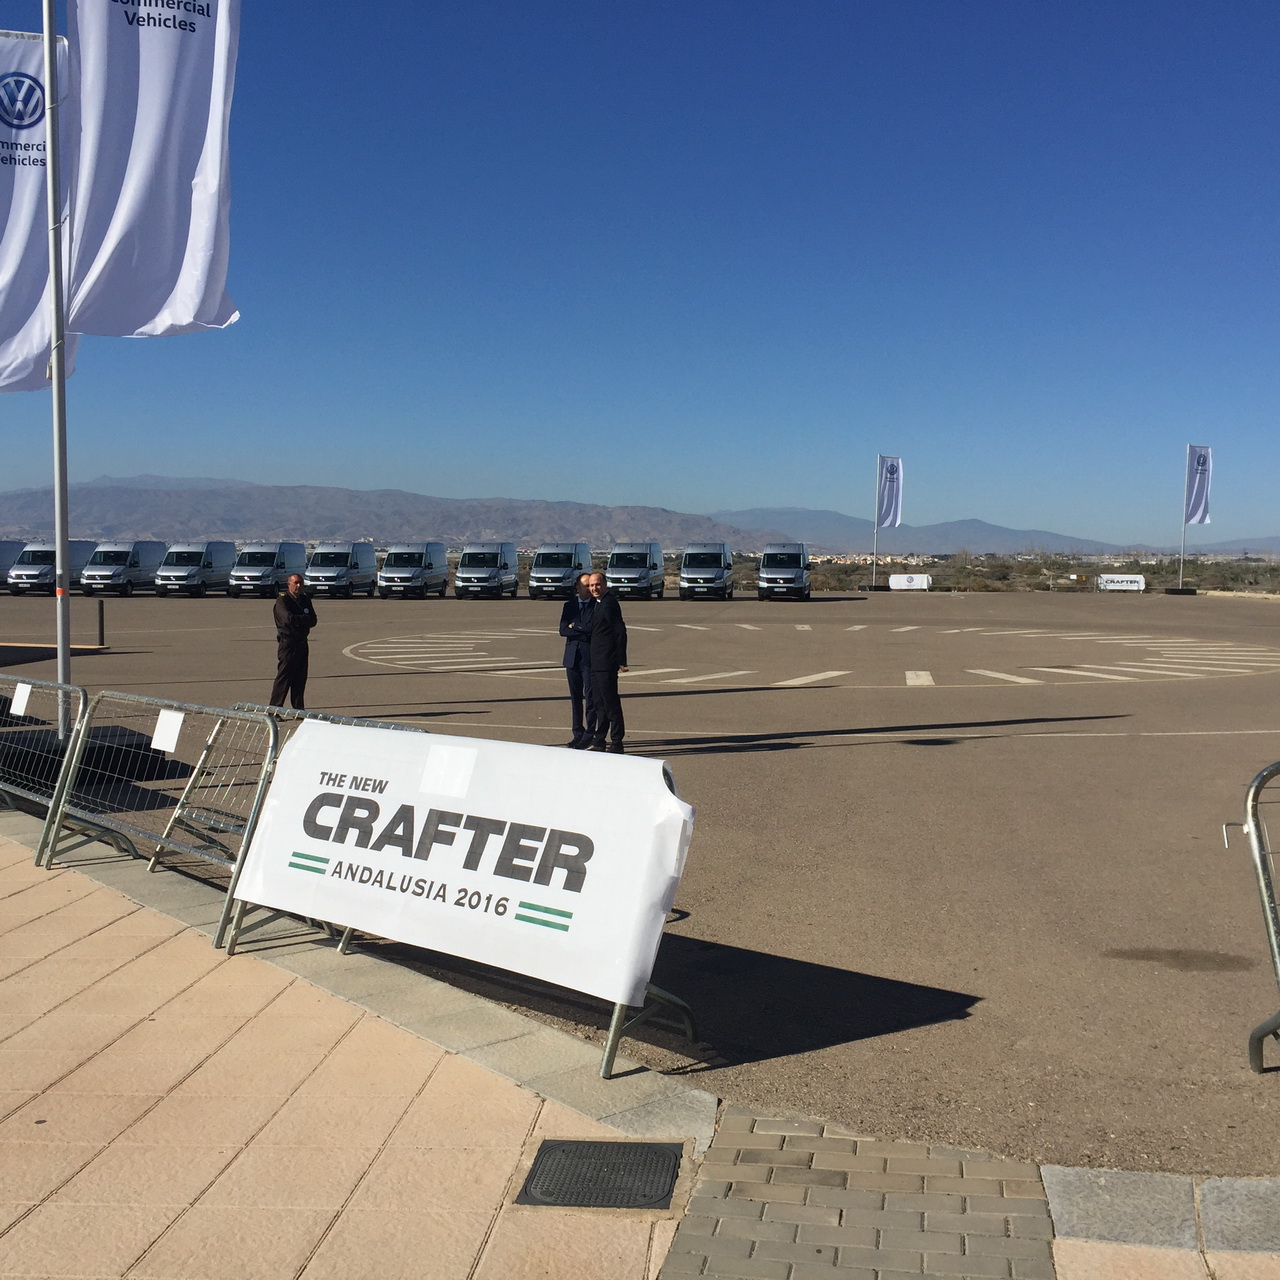 Pruebas de conducción para el Crafter de Volkswagen en Almería